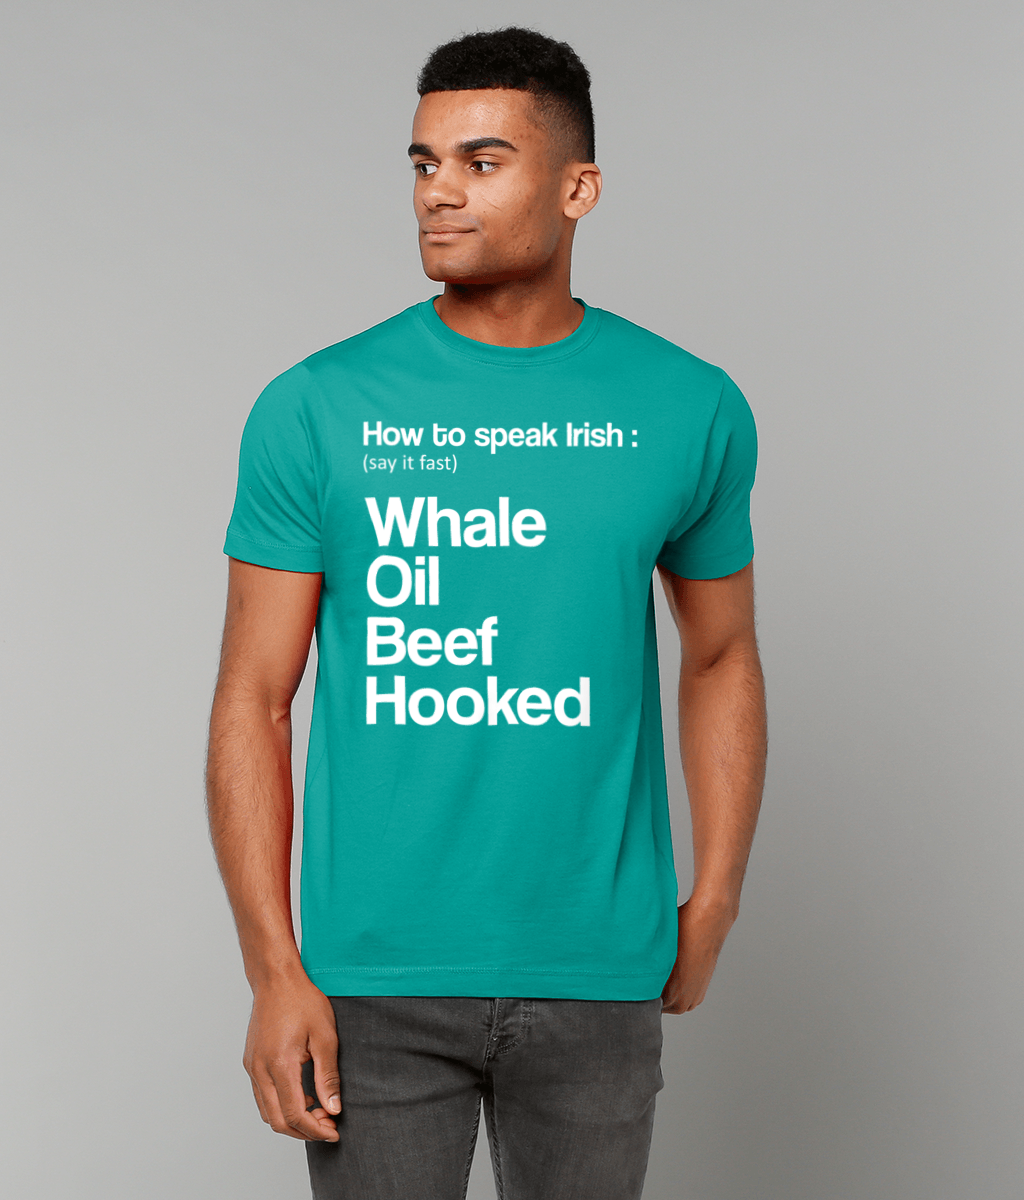 How To Speak Irish: T-Shirt